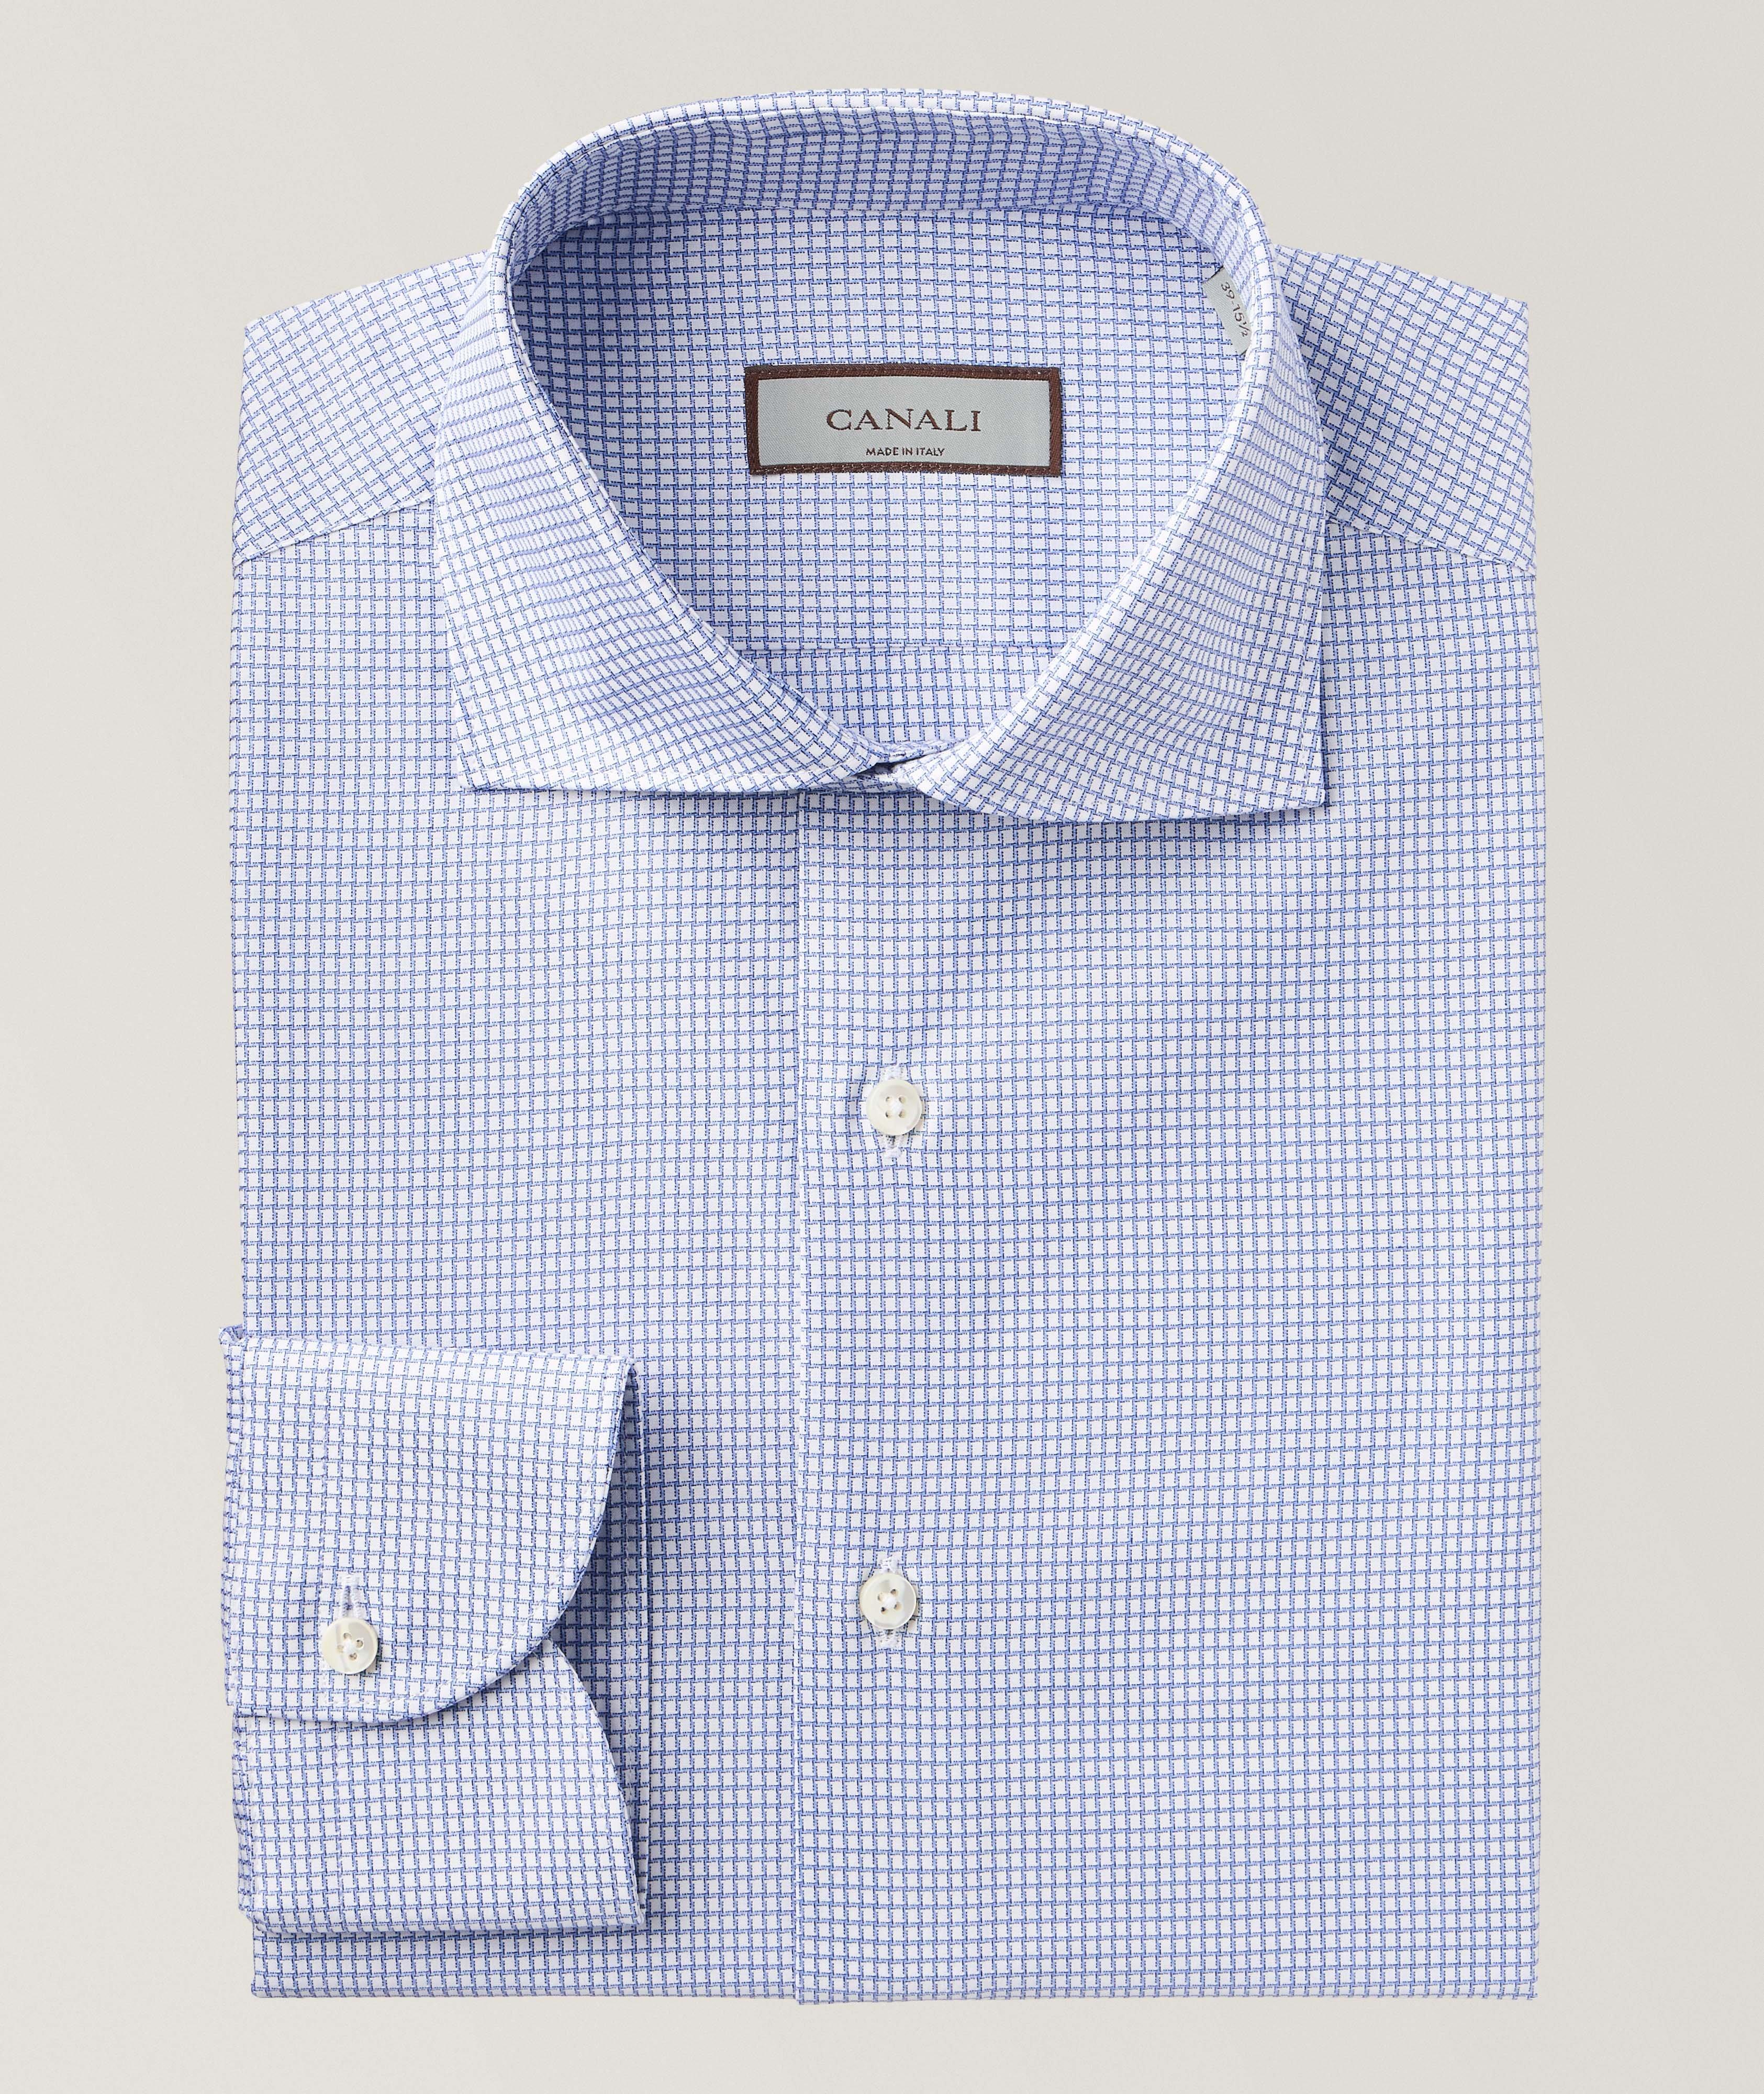 Chemise habillée à motif géométrique de coupe amincie image 0